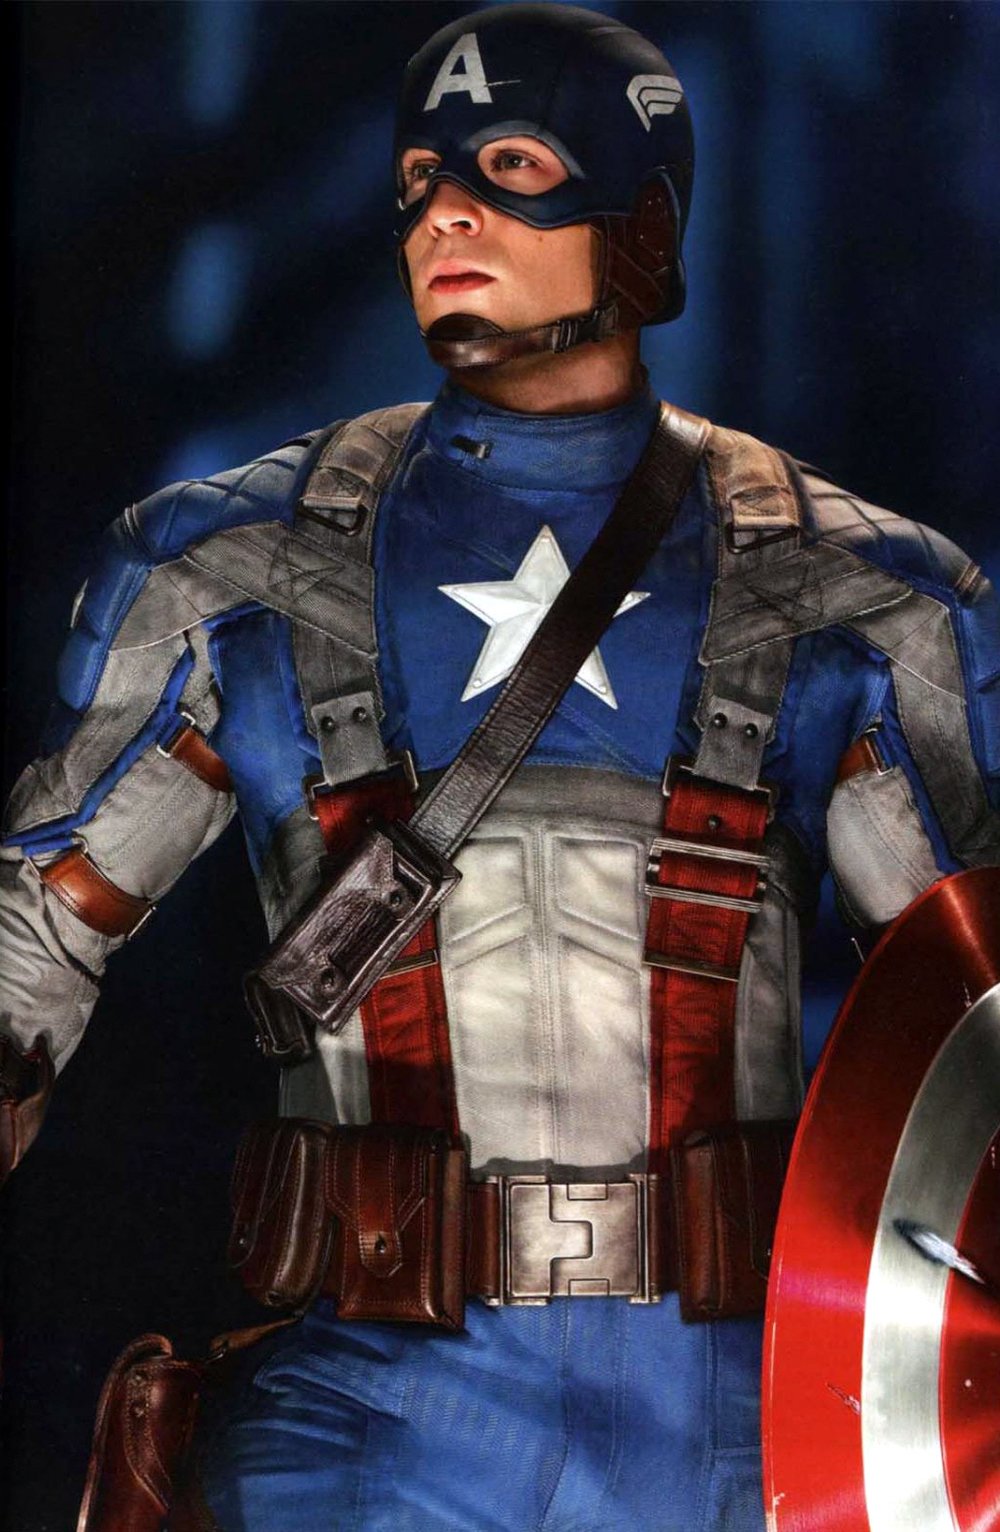 whitaker-malem-movie-captain-america-the-first-avenger-chris-evans-superhero-suit-costume.jpg